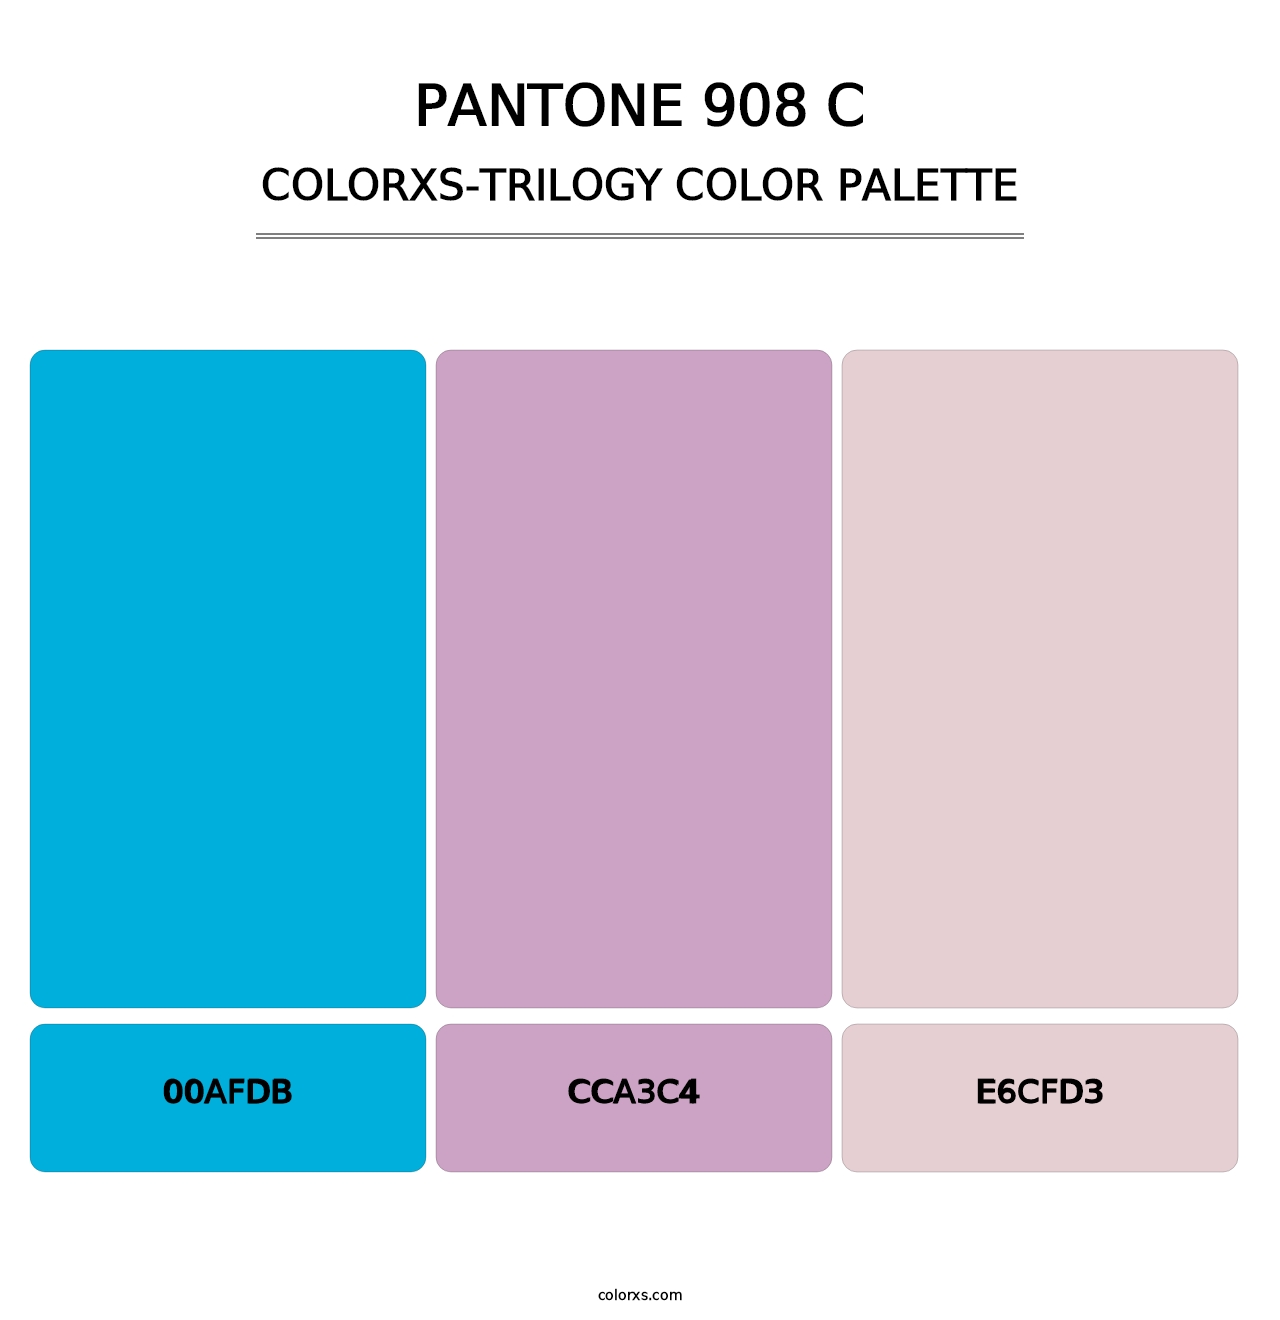 PANTONE 908 C - Colorxs Trilogy Palette